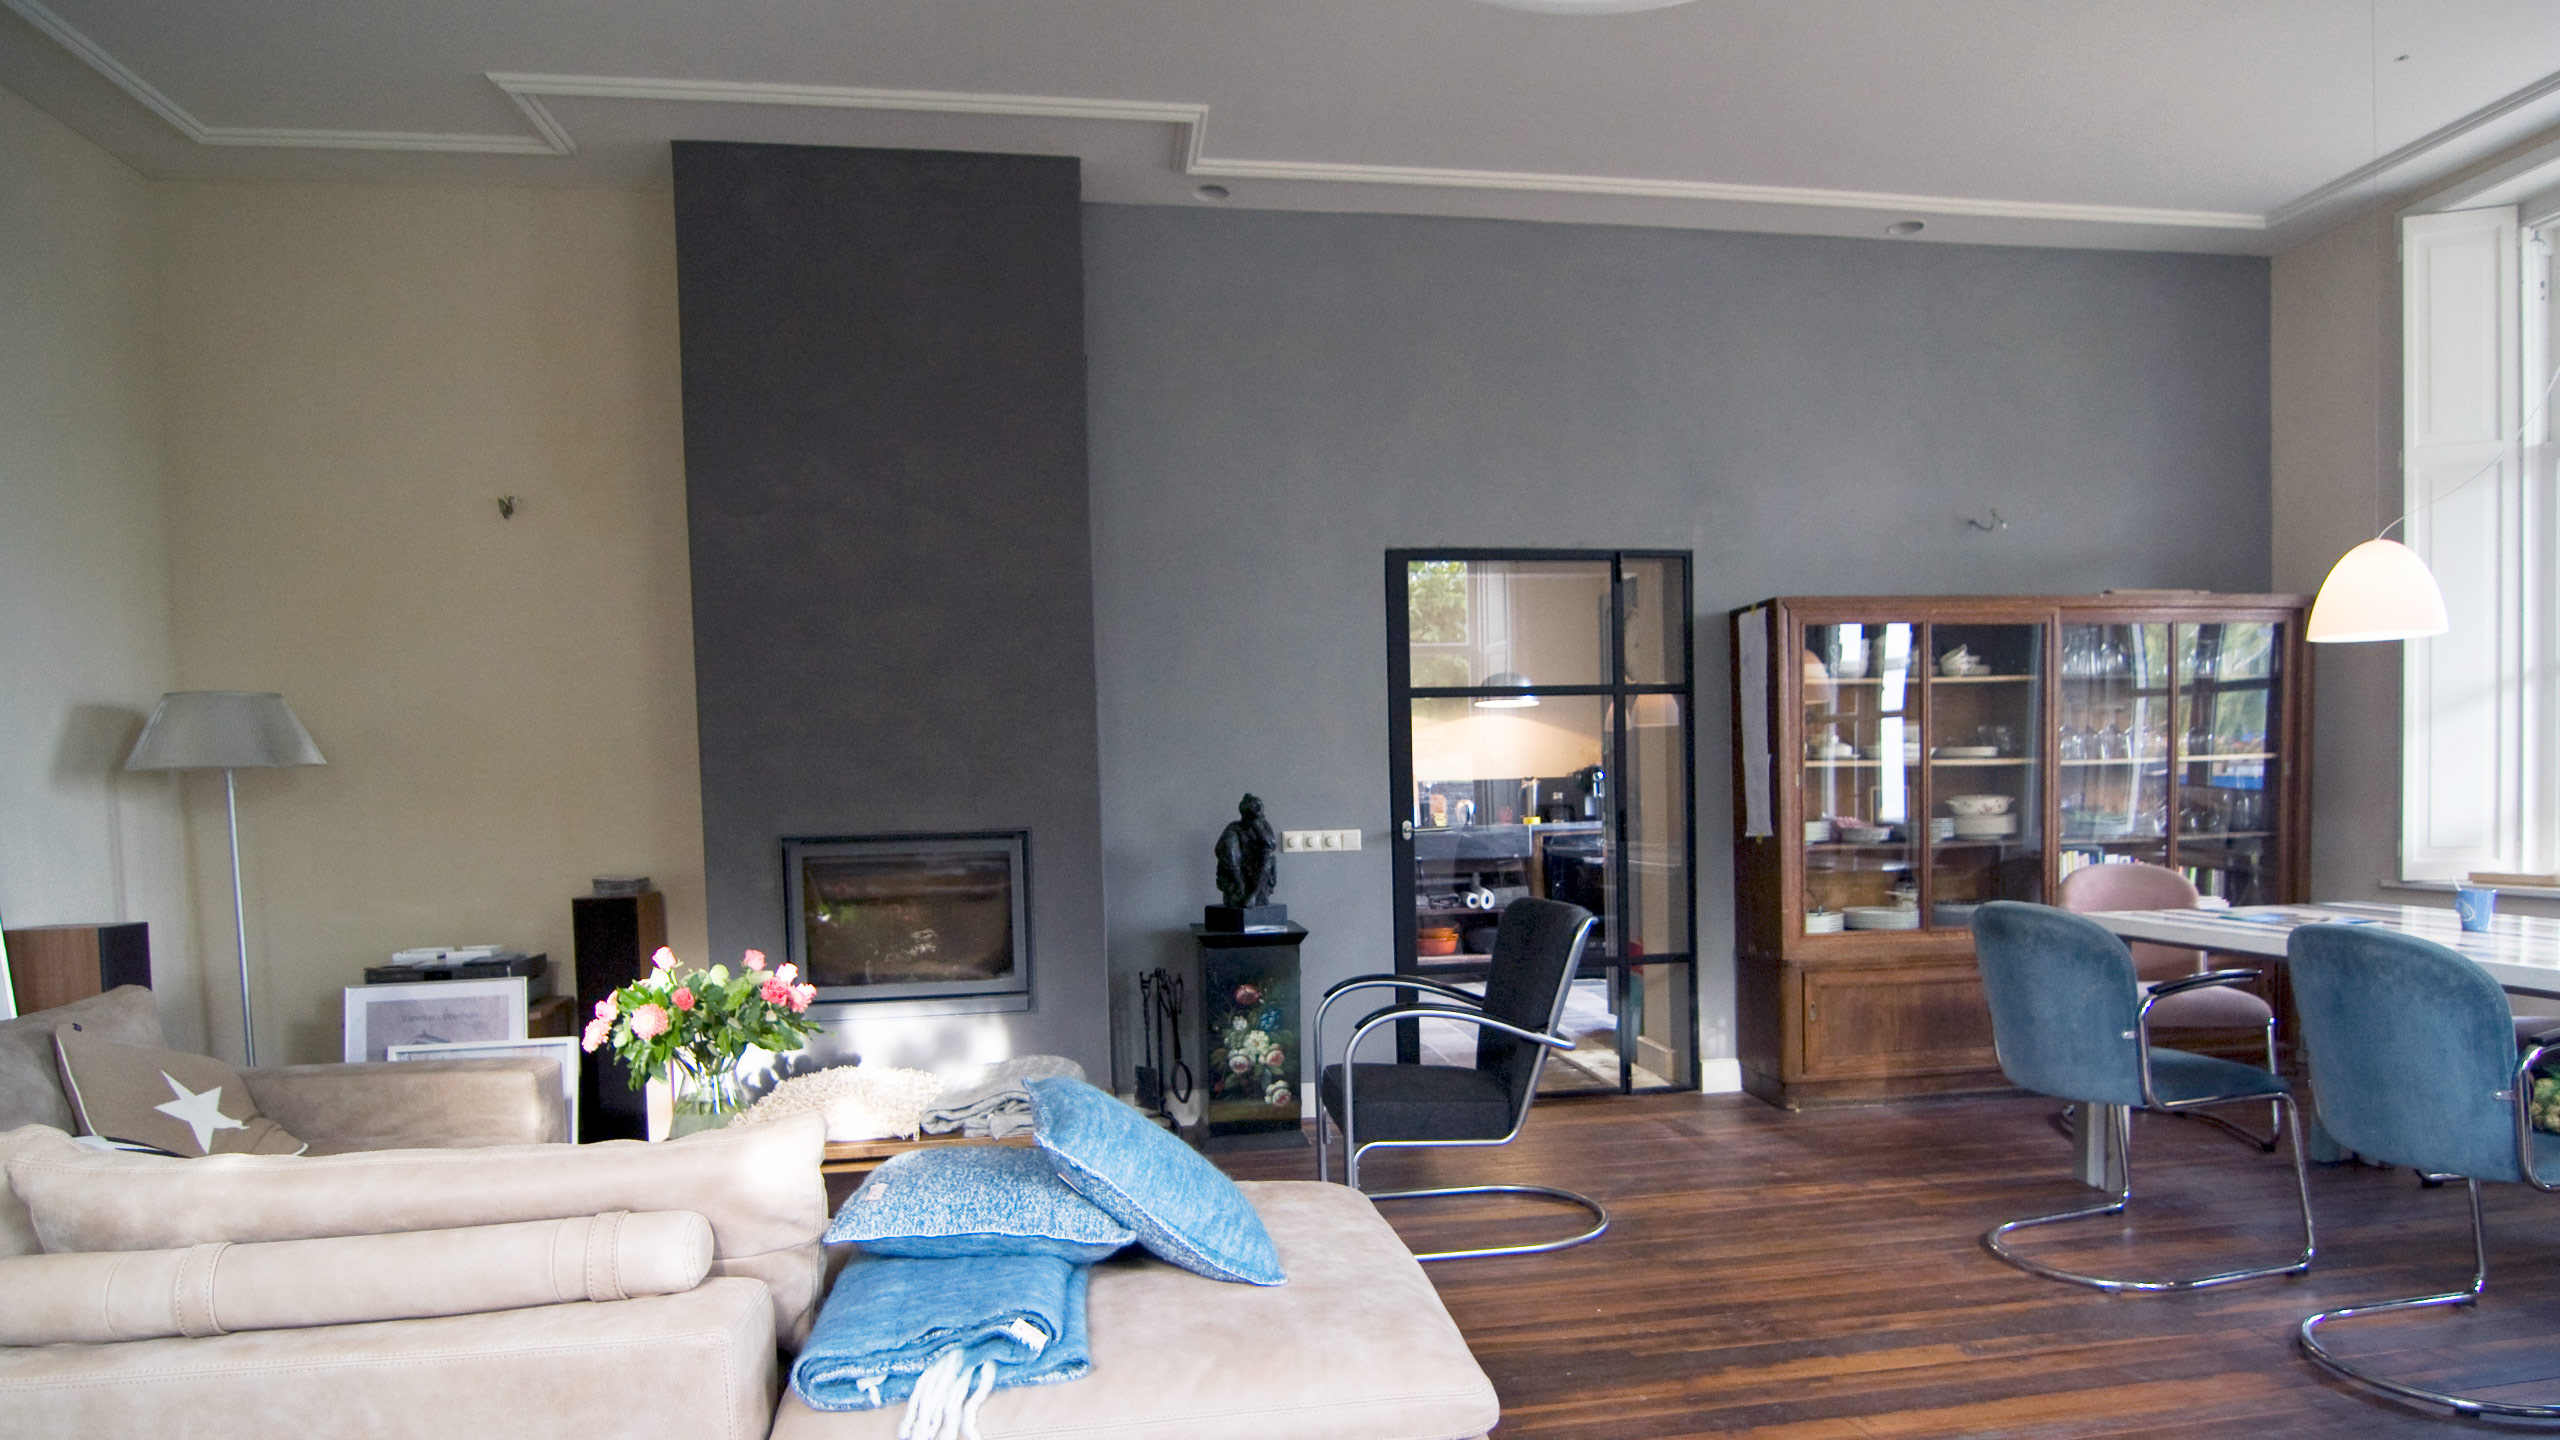 Residential - Luxury villa, Living room